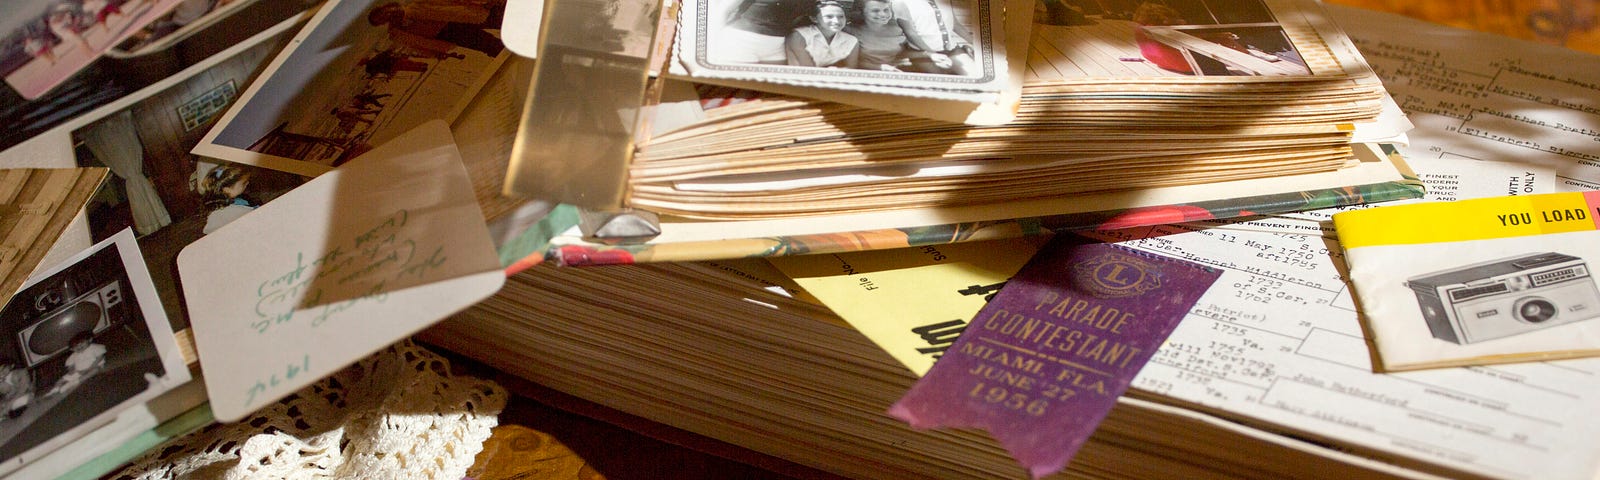 A pile of photos sits upon a scrapbook.